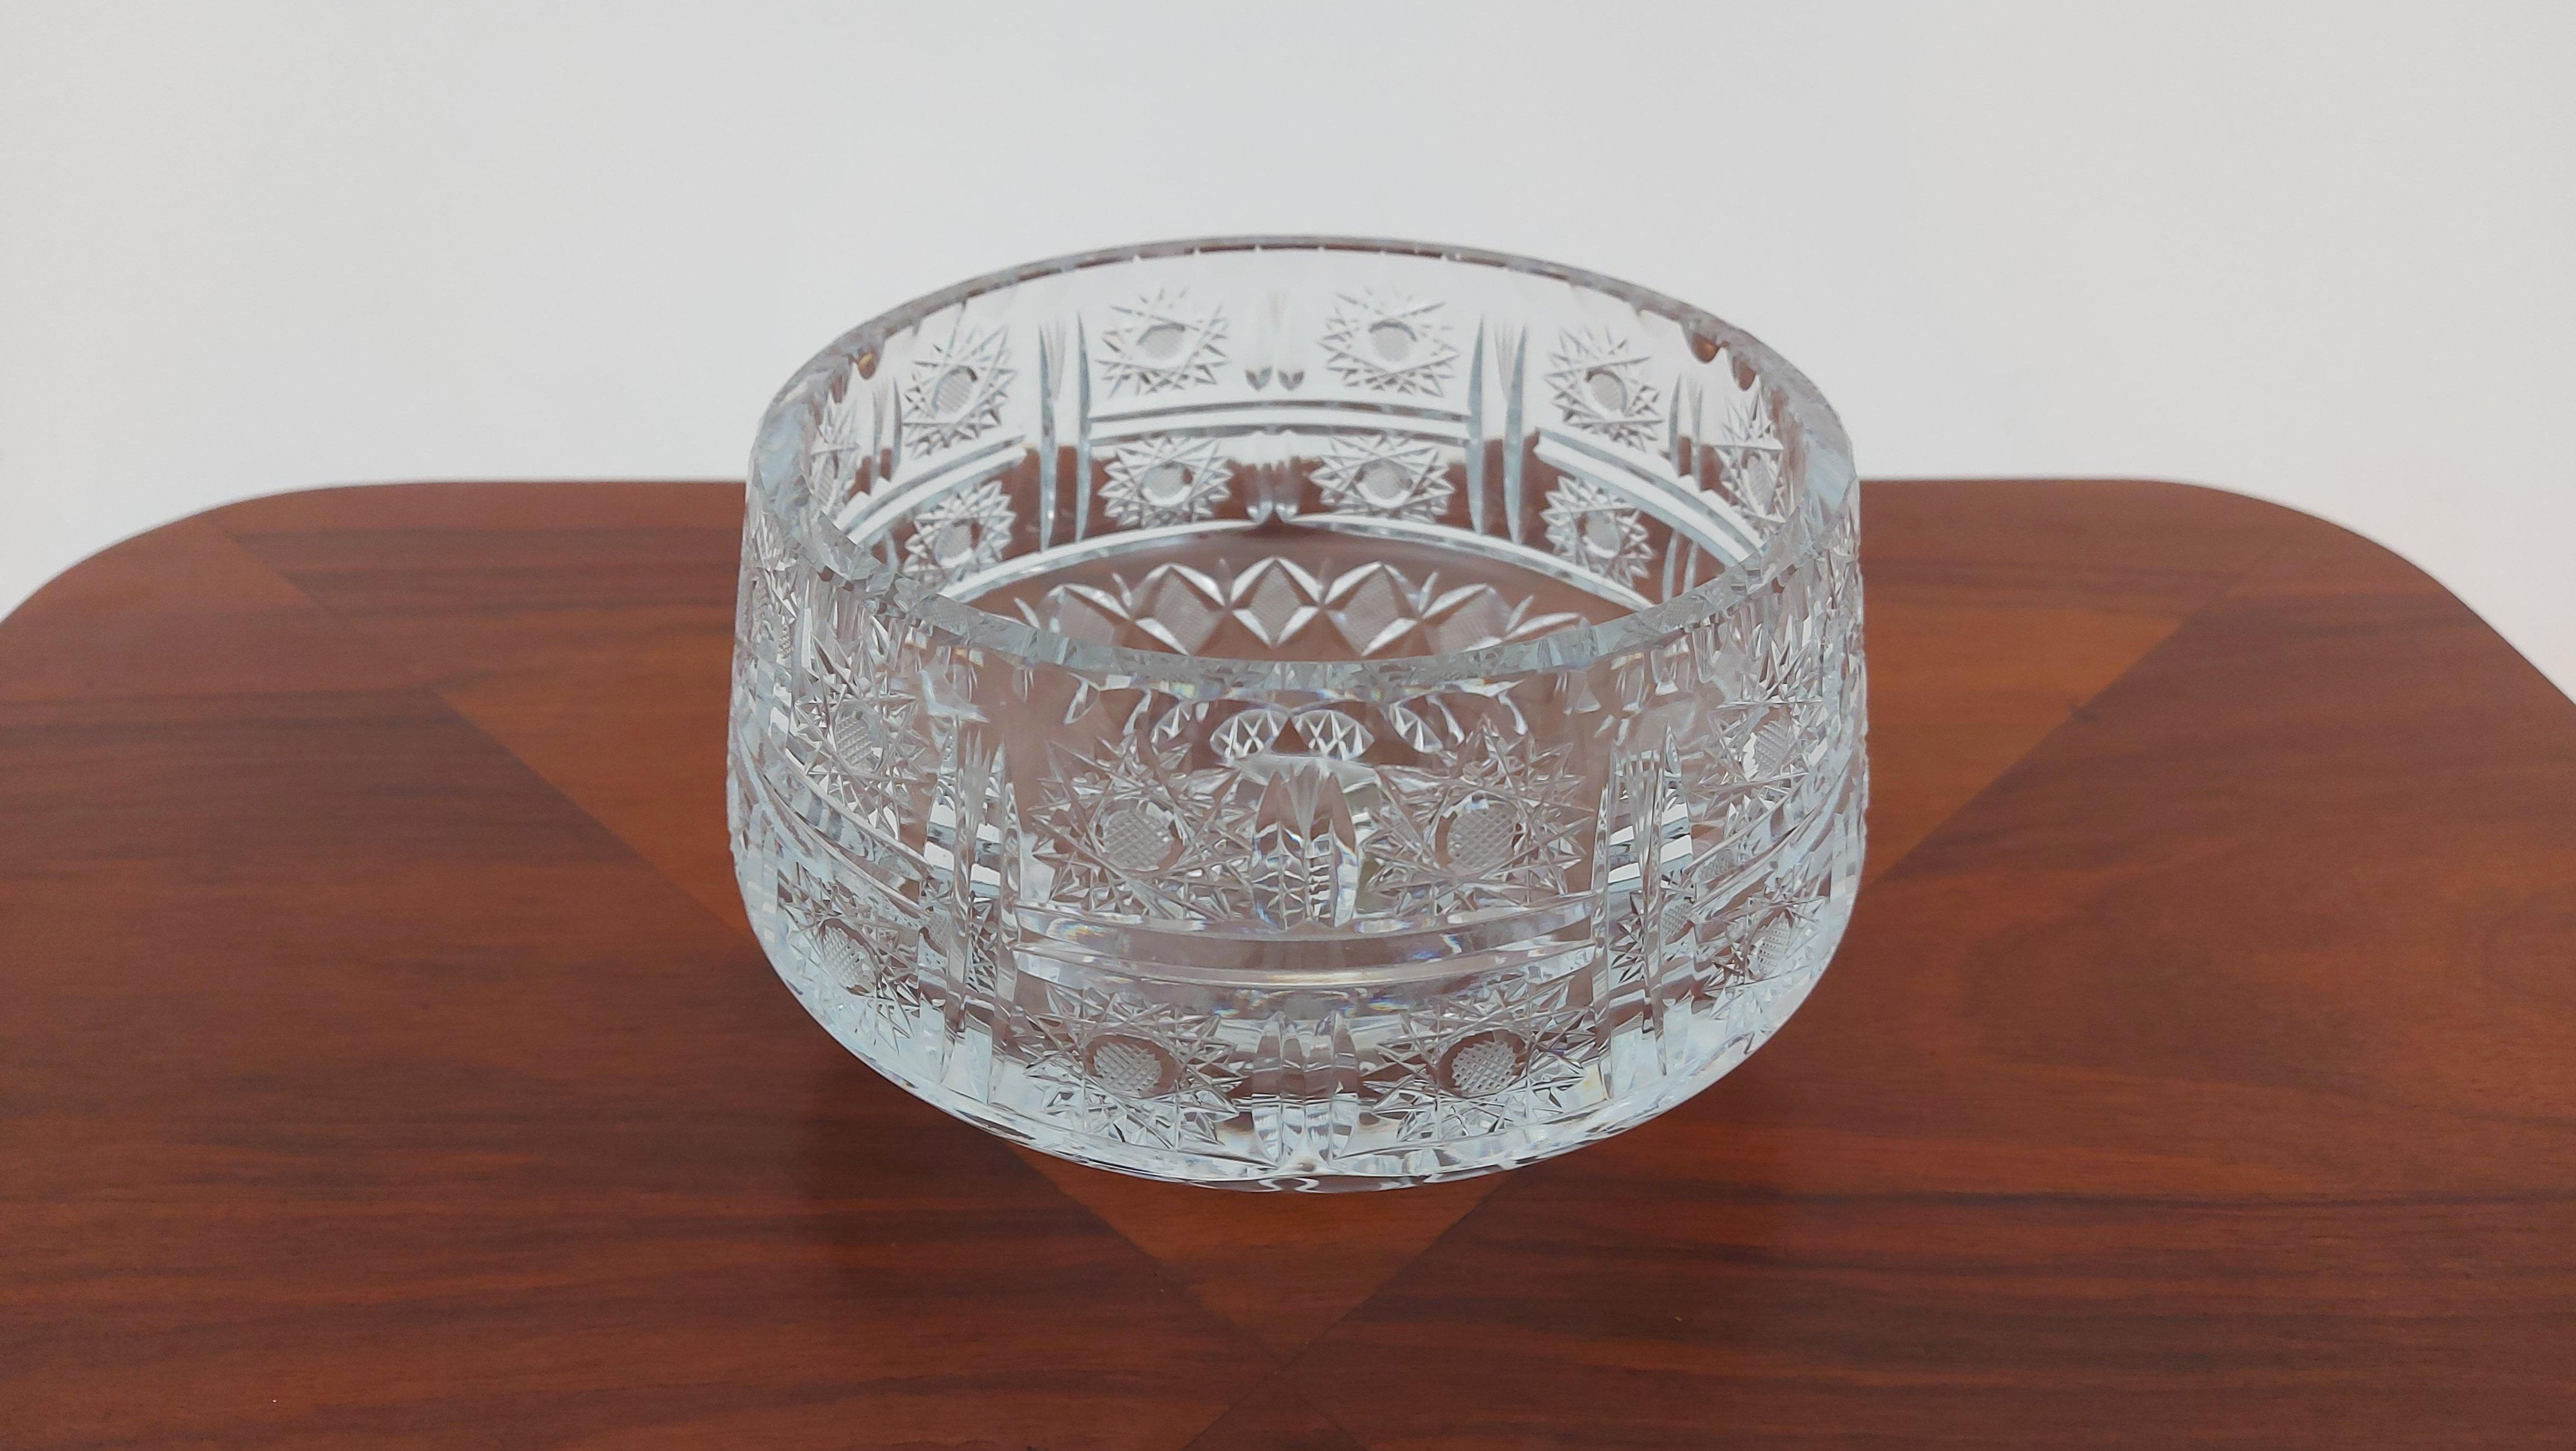 Bol en cristal pour les fruits ou les sucreries.

Fabriqué en Pologne dans les années 1950 / 1960.

Dimensions : hauteur 10 cm / diamètre 18 cm.